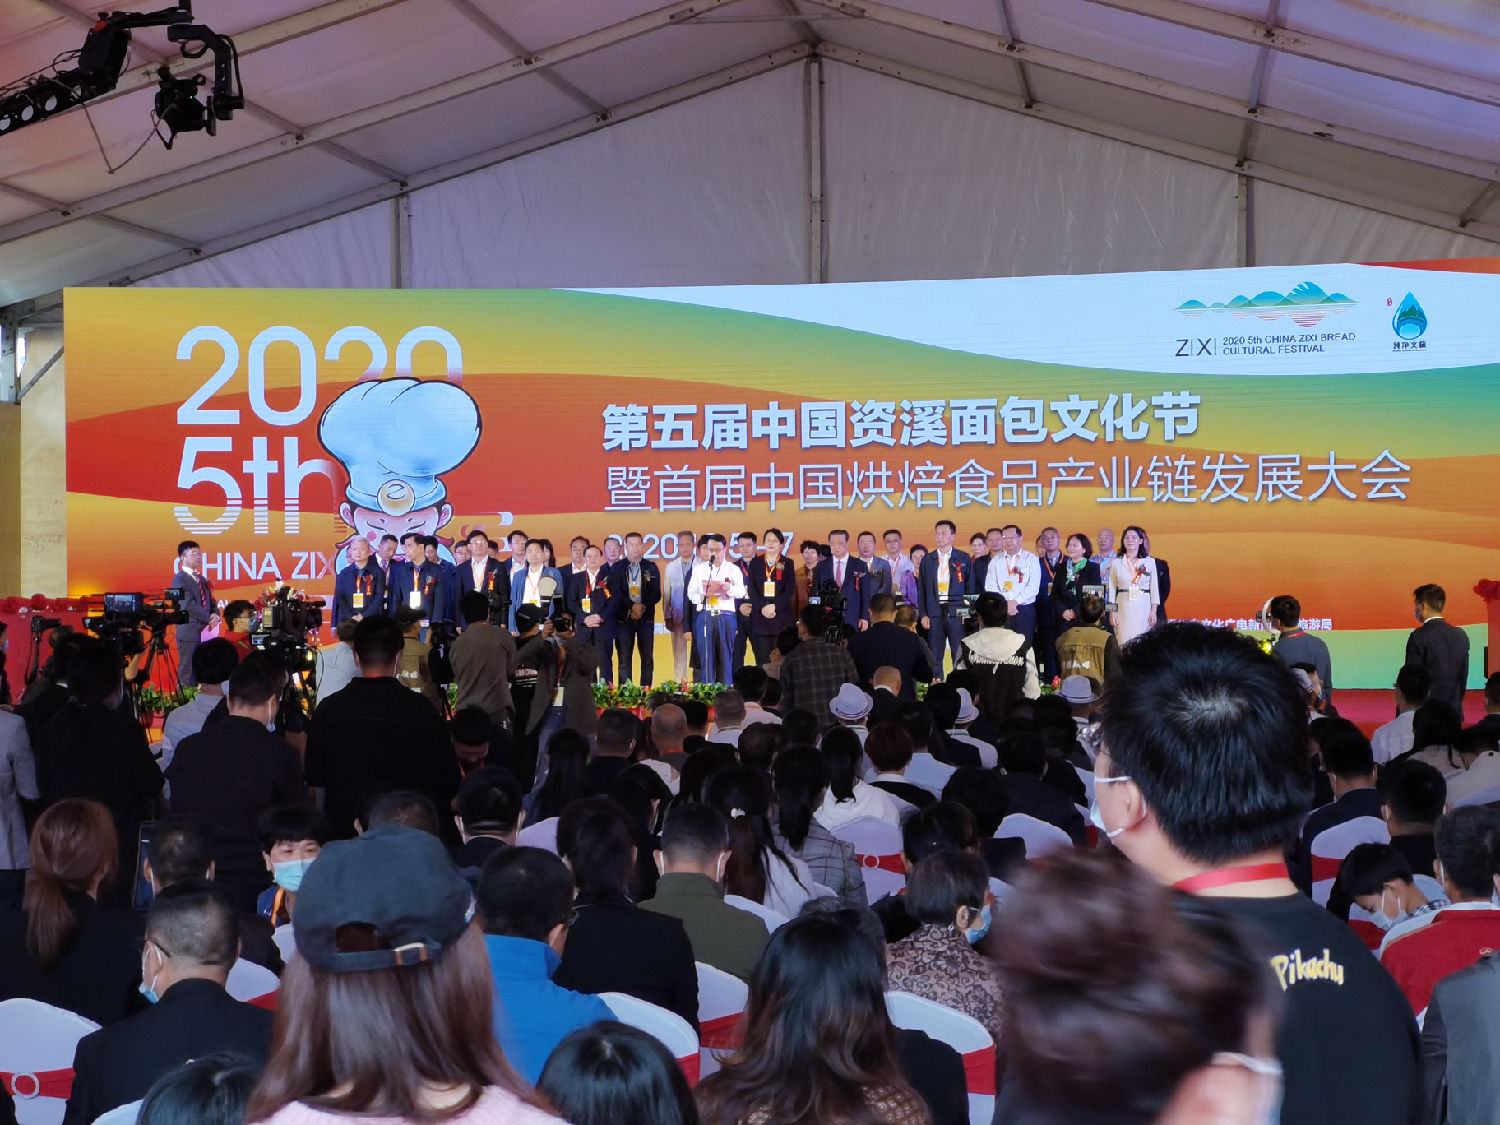 凯时k8受邀参展2020第五届中国资溪面包文化节